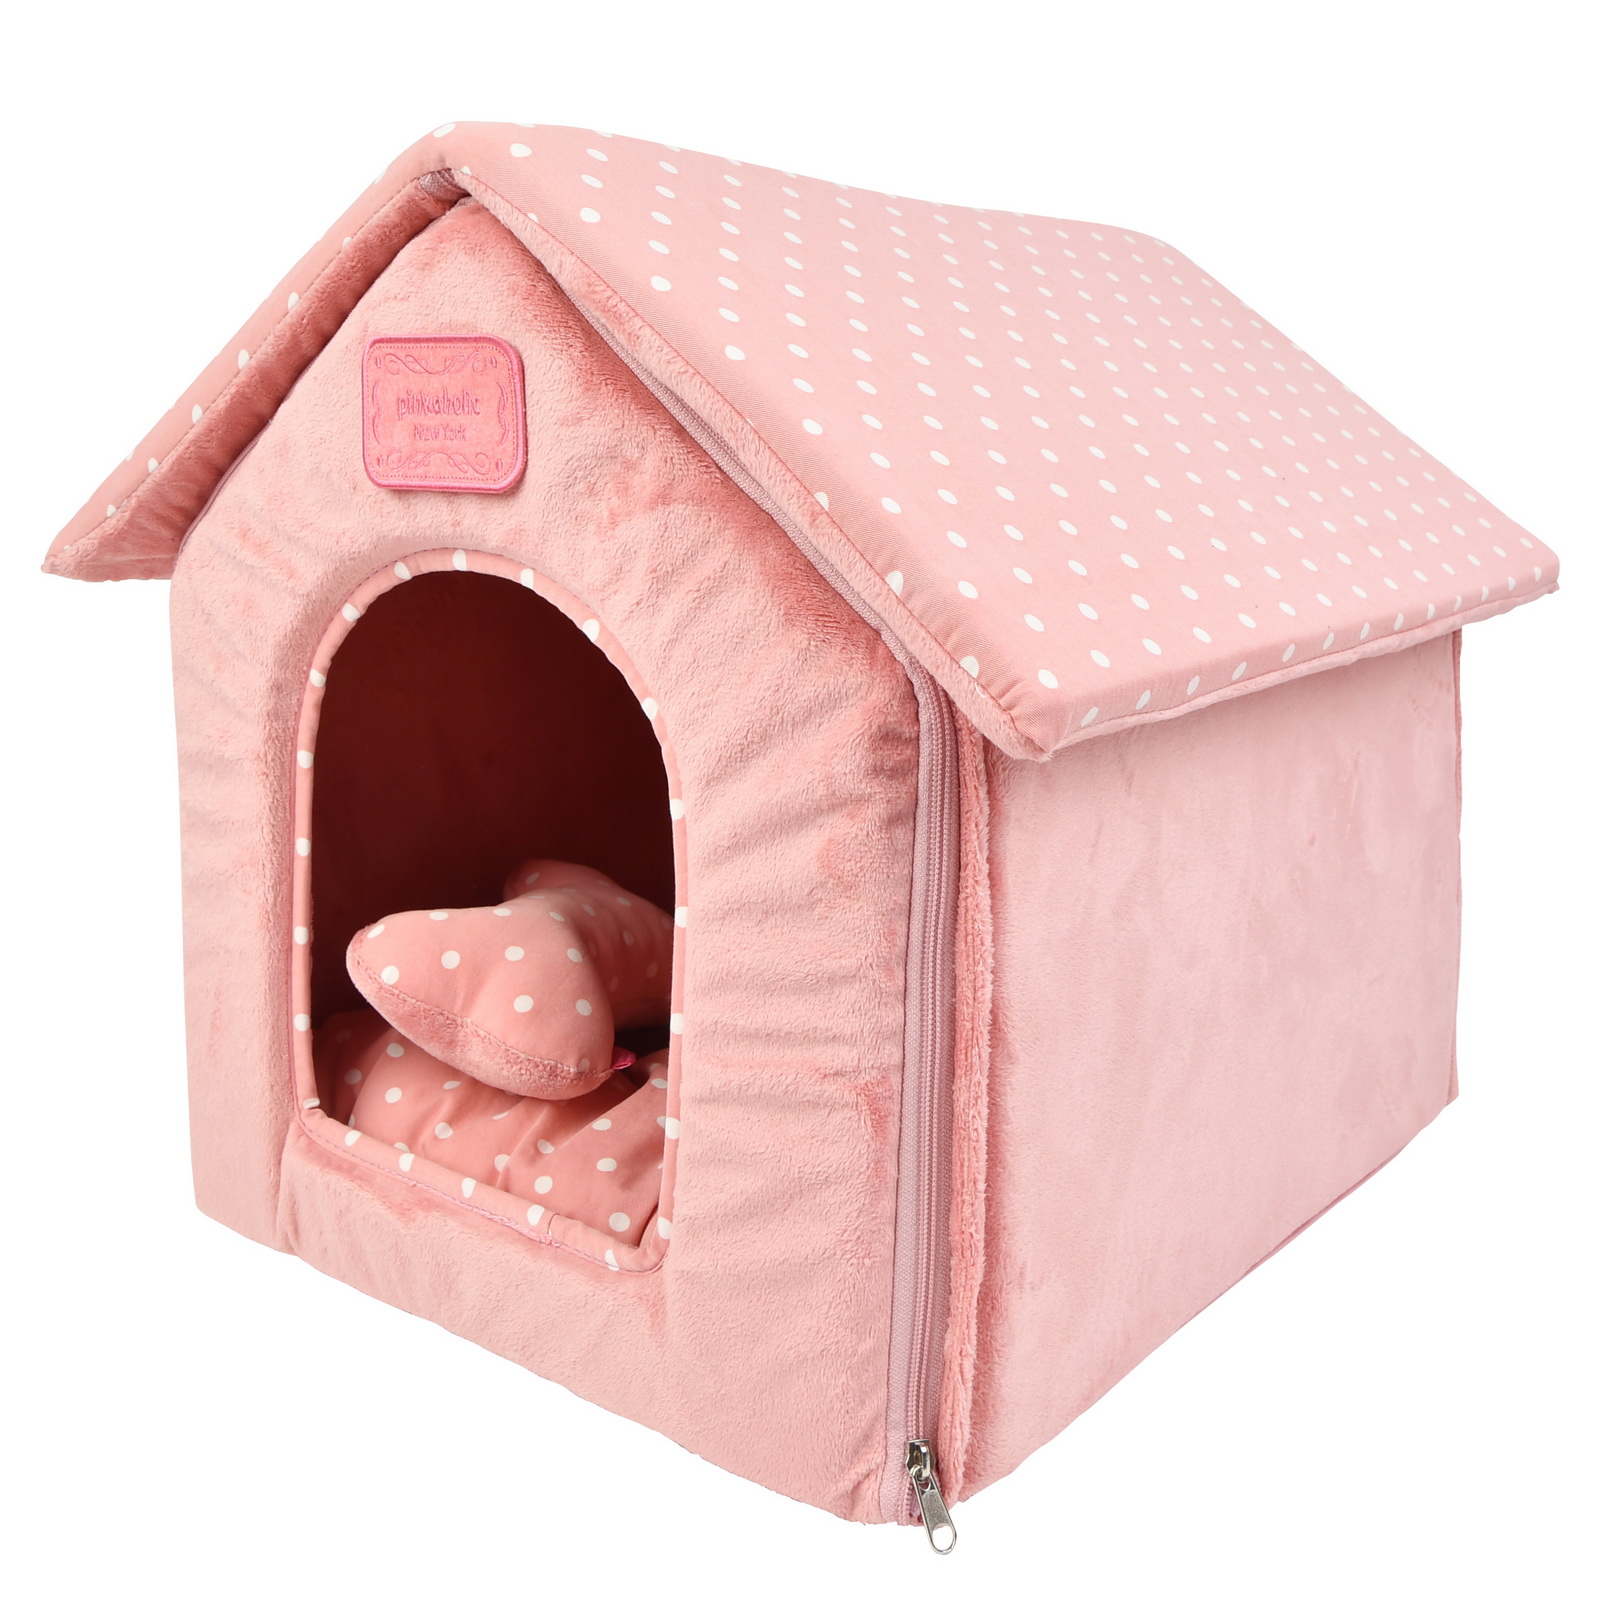 Домик для животных c косточкой PINKAHOLIC Paloma, розовый, 40х45х42см (Южная Корея)